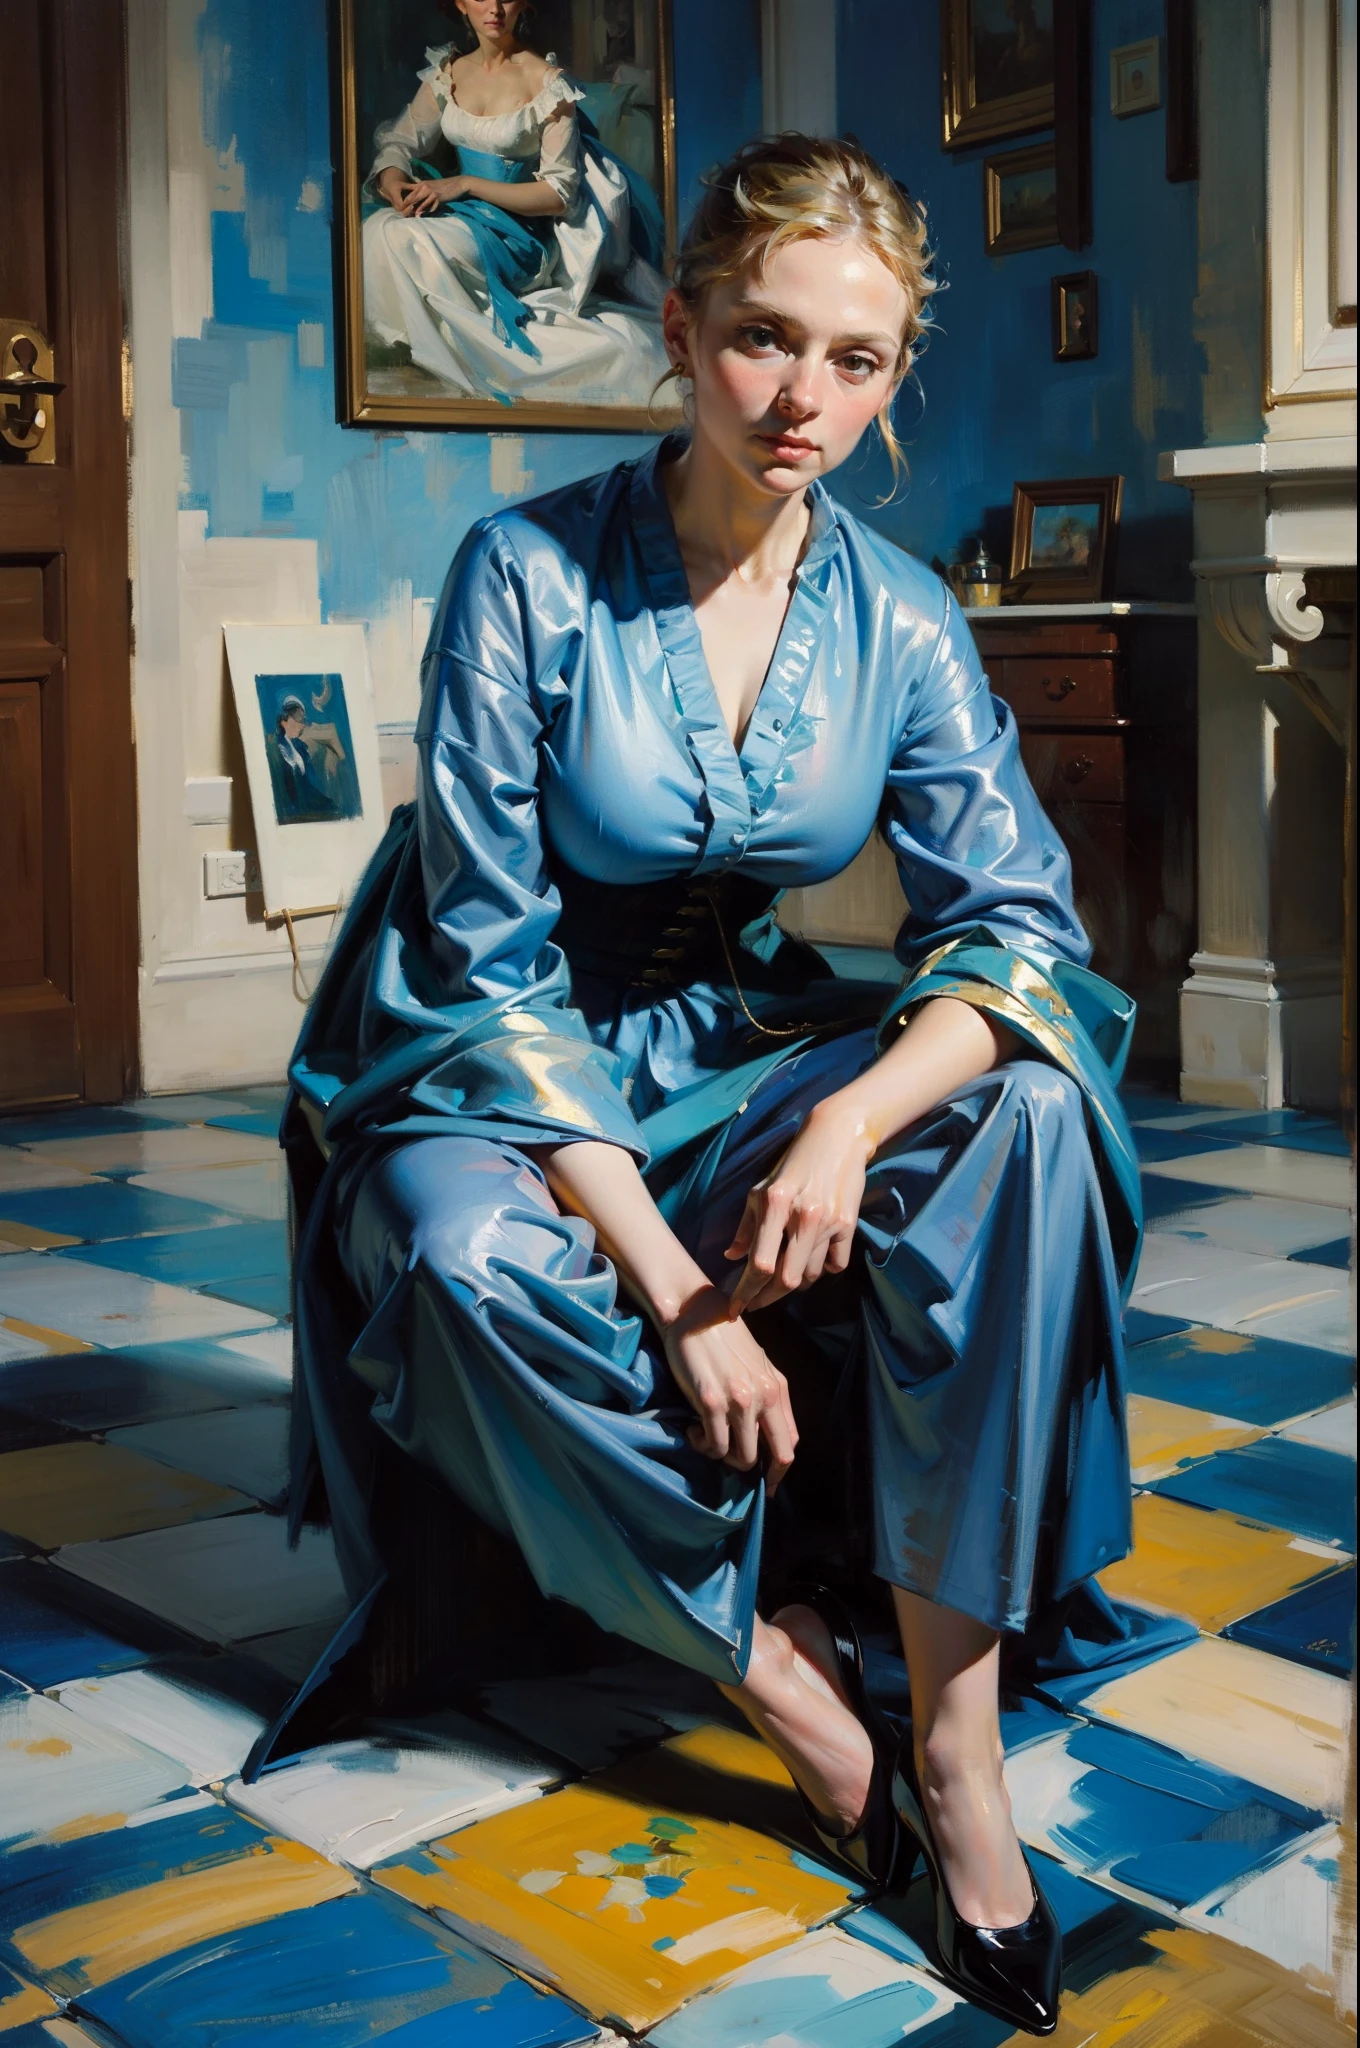 油絵, 大きな筆遣い, 18世紀の青いドレスを着た女性, タイル張りの床に座る, ペイントタイル, 全身肖像画, ピカソに触発され、モネに触発され、WLOPに触発された, 受賞作品, 巨匠画家による油絵, 細かい筆遣い, 濃い色の値, 本当の印象, 息を呑むほど美しい